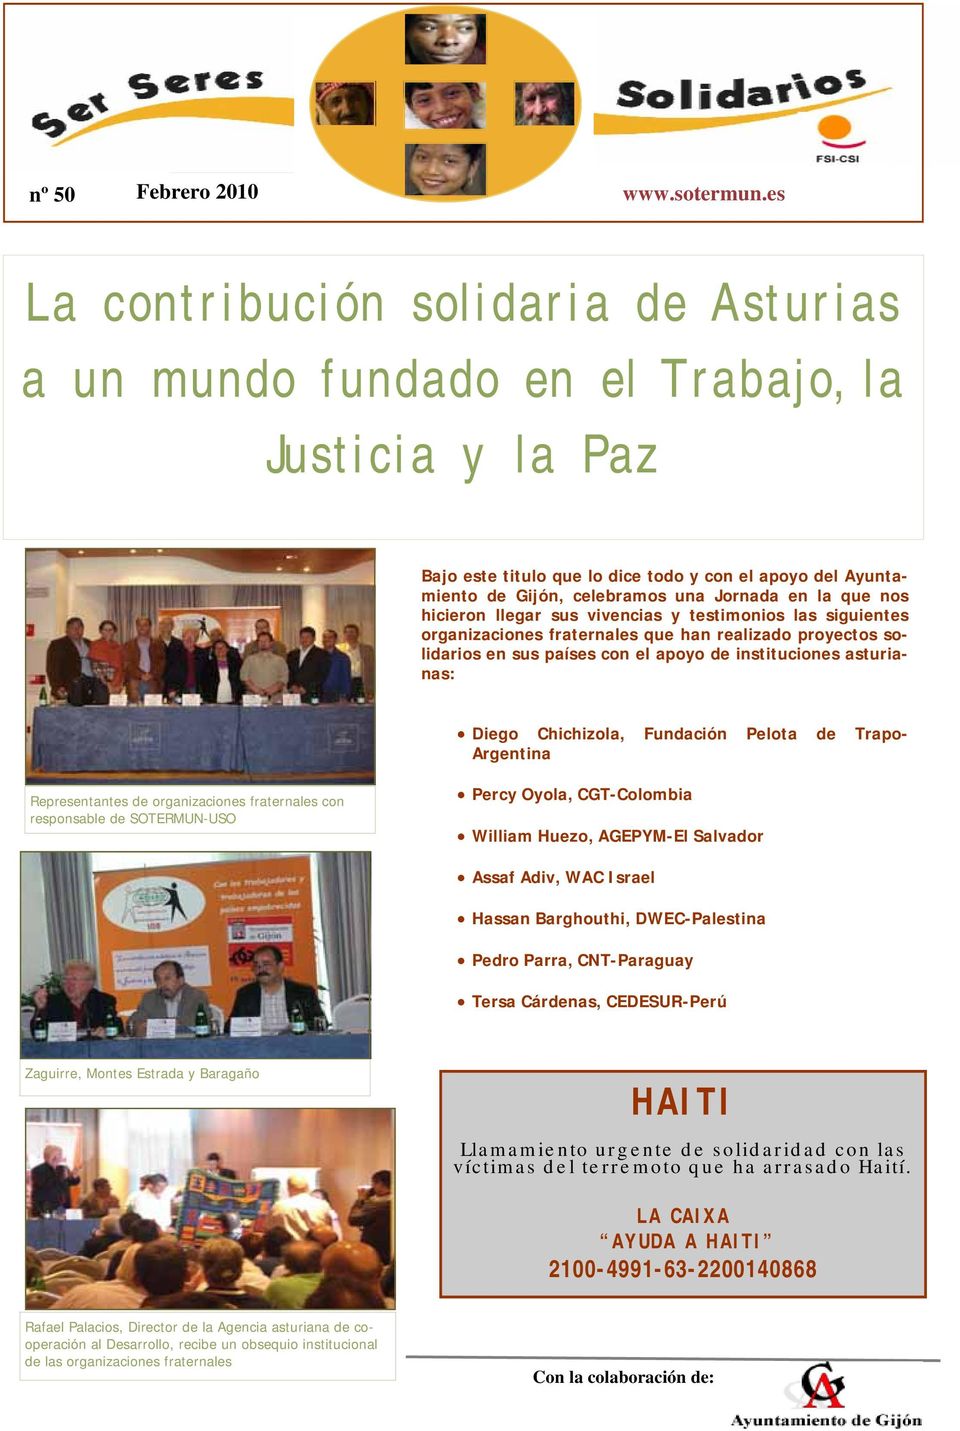 la que nos hicieron llegar sus vivencias y testimonios las siguientes organizaciones fraternales que han realizado proyectos solidarios en sus países con el apoyo de instituciones asturianas: Diego